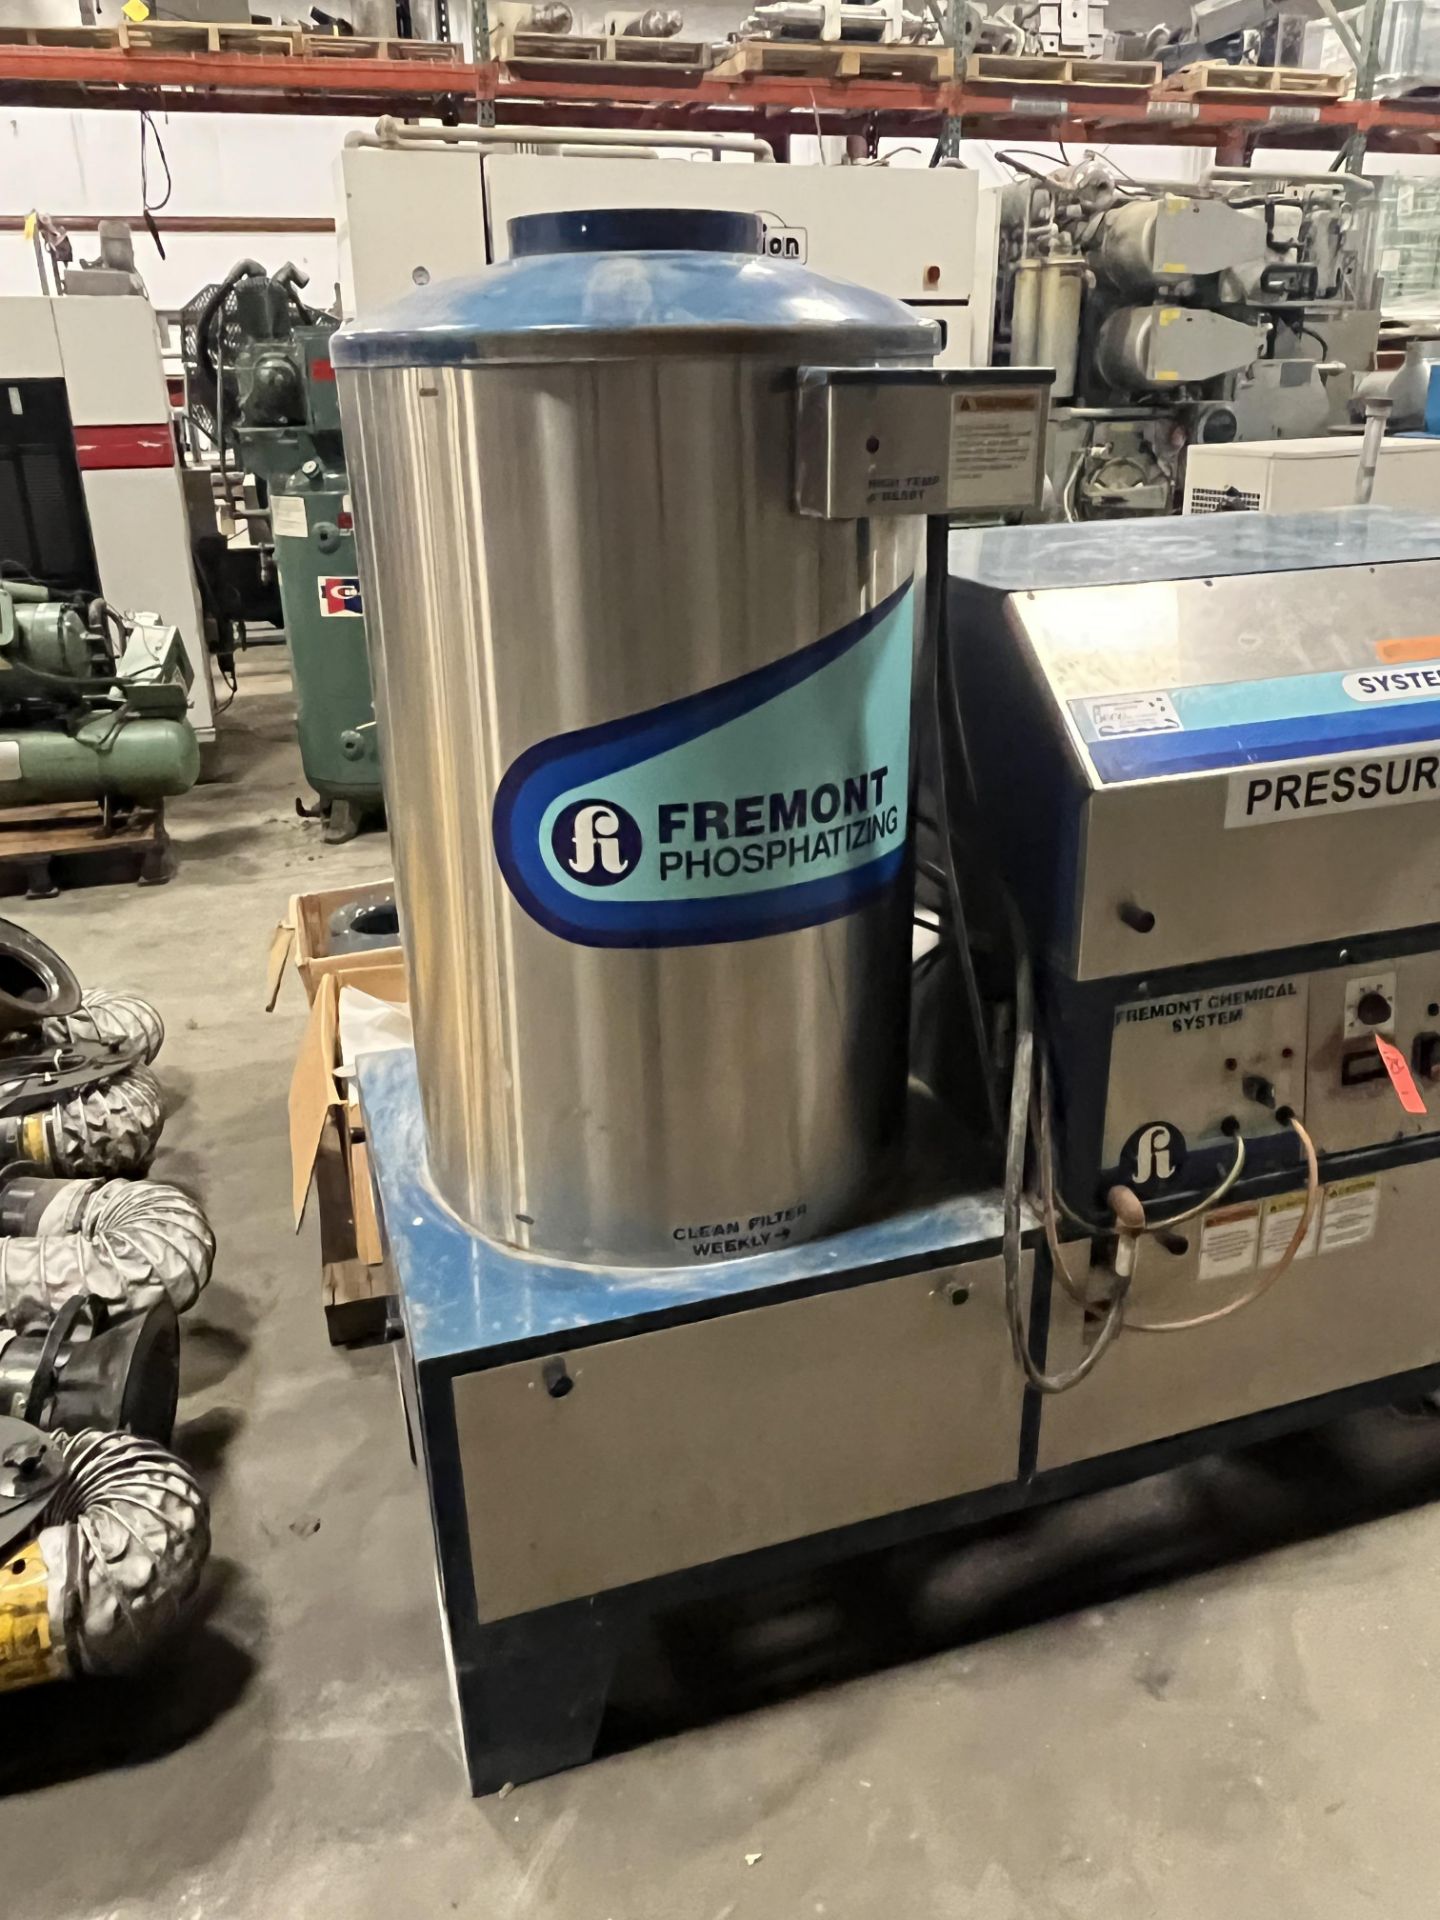 Fremont Phosphatizing System 1024 Hot Pressure Washer - Image 3 of 3